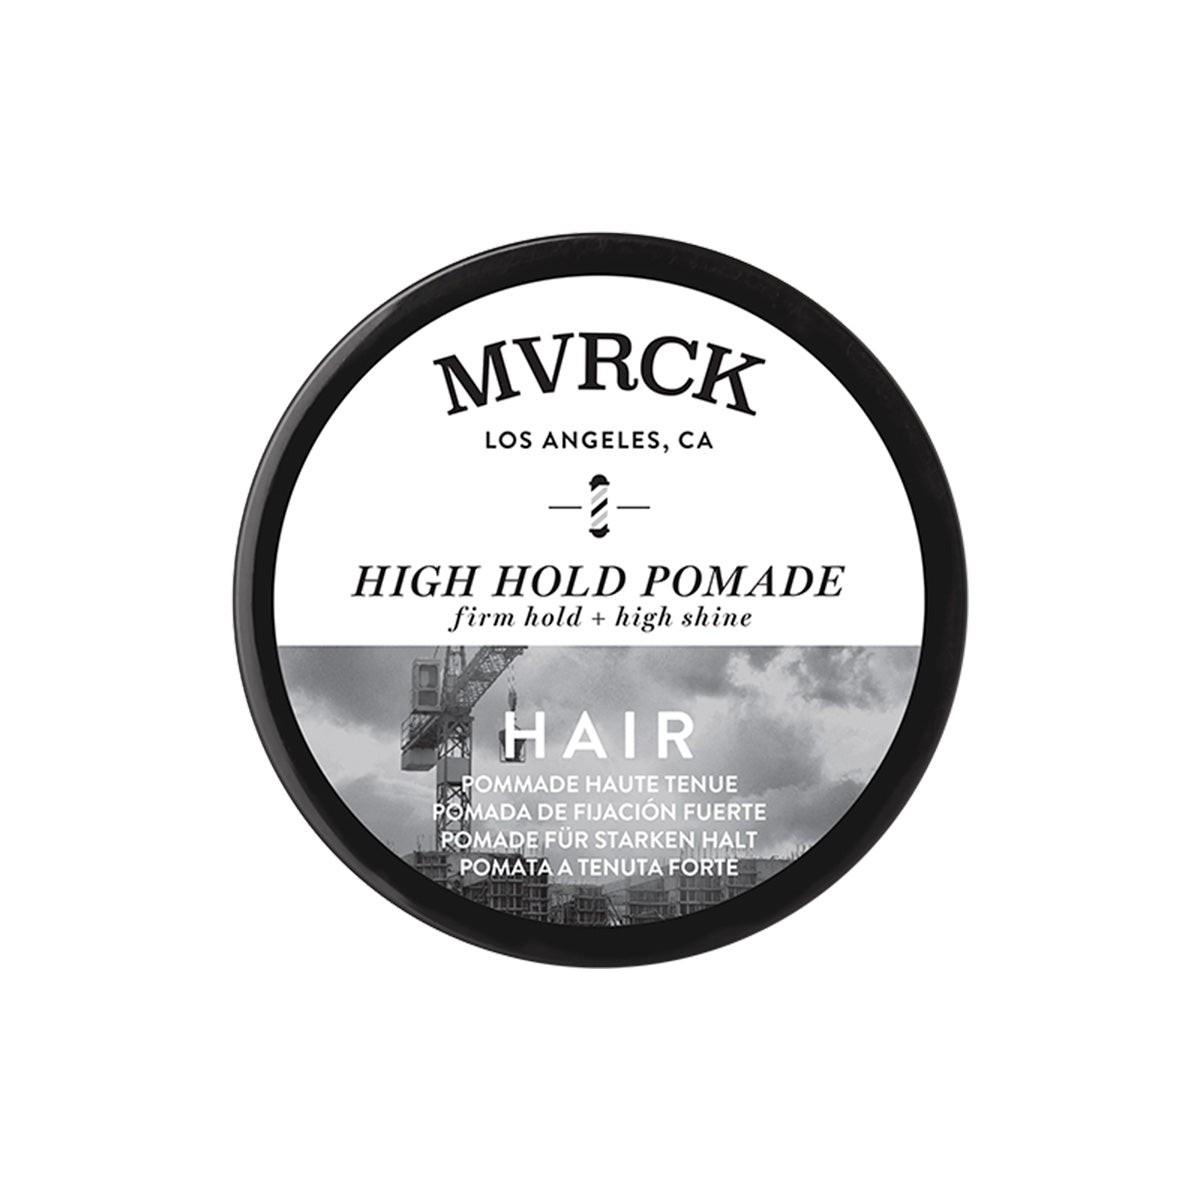 MVRCK - High Hold Pomade von Paul Mitchell